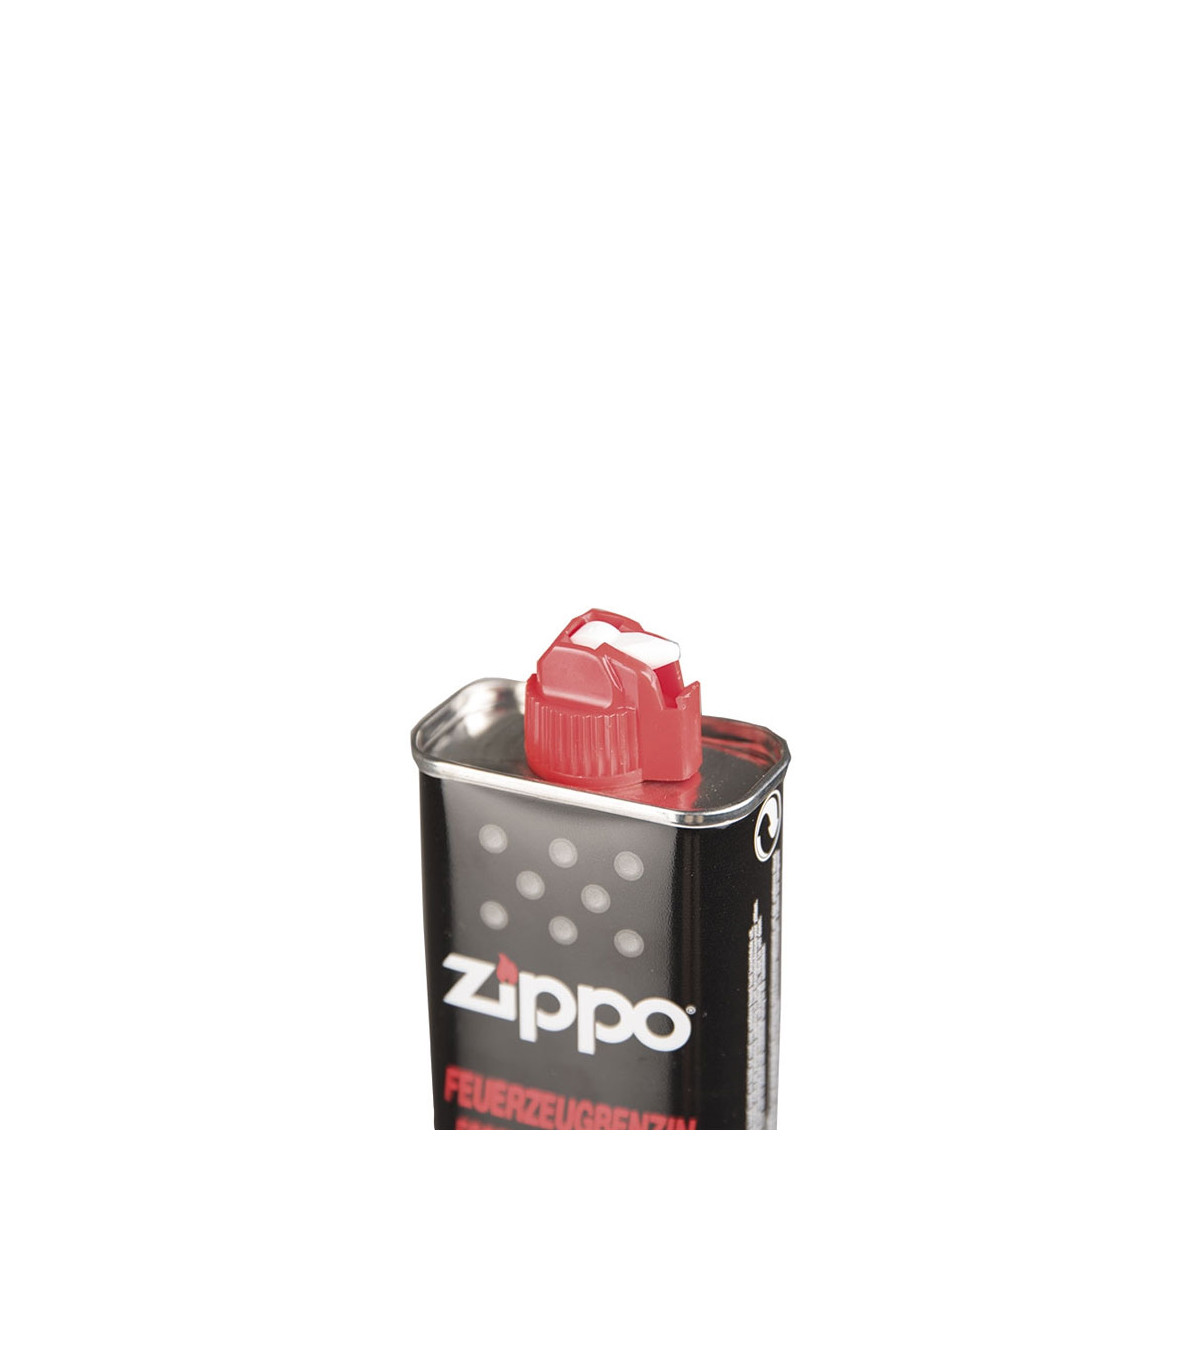 https://media1.vetsecurite.com/22131-thickbox_default/recharge-en-essence-pour-briquet-zippo-125-ml.jpg